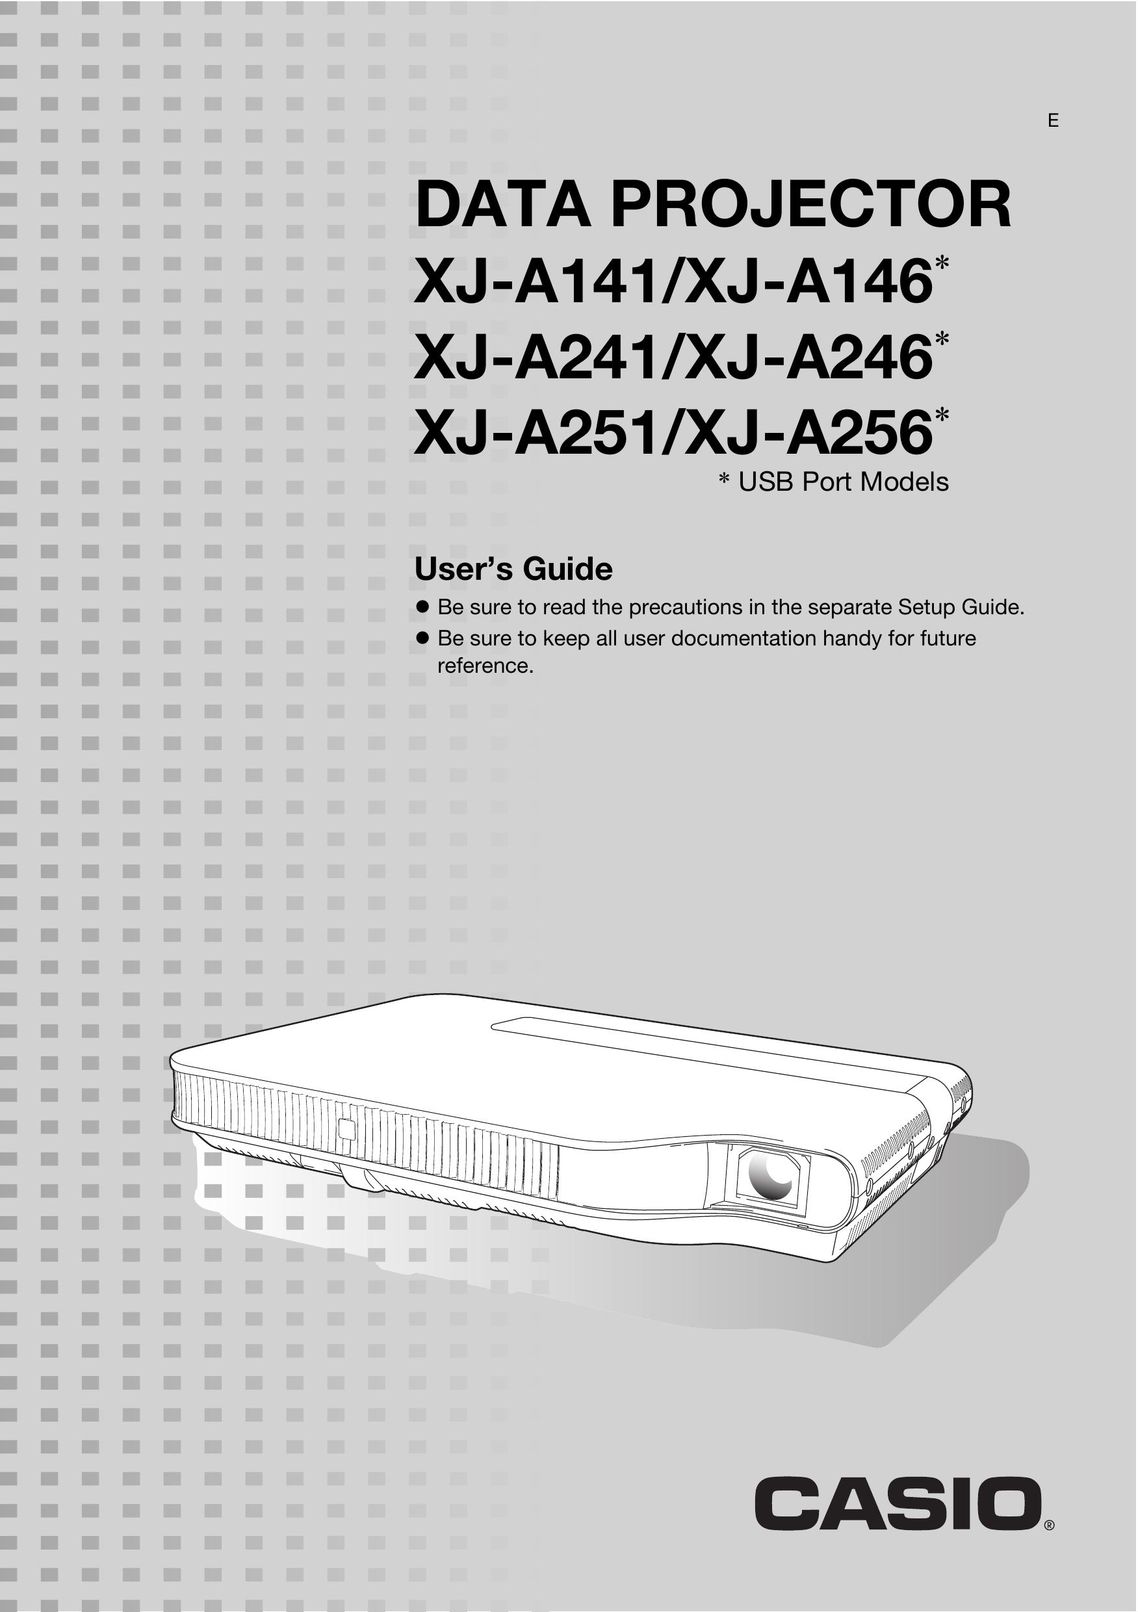 Casio XJ-A141/XJ-A146* Projector User Manual